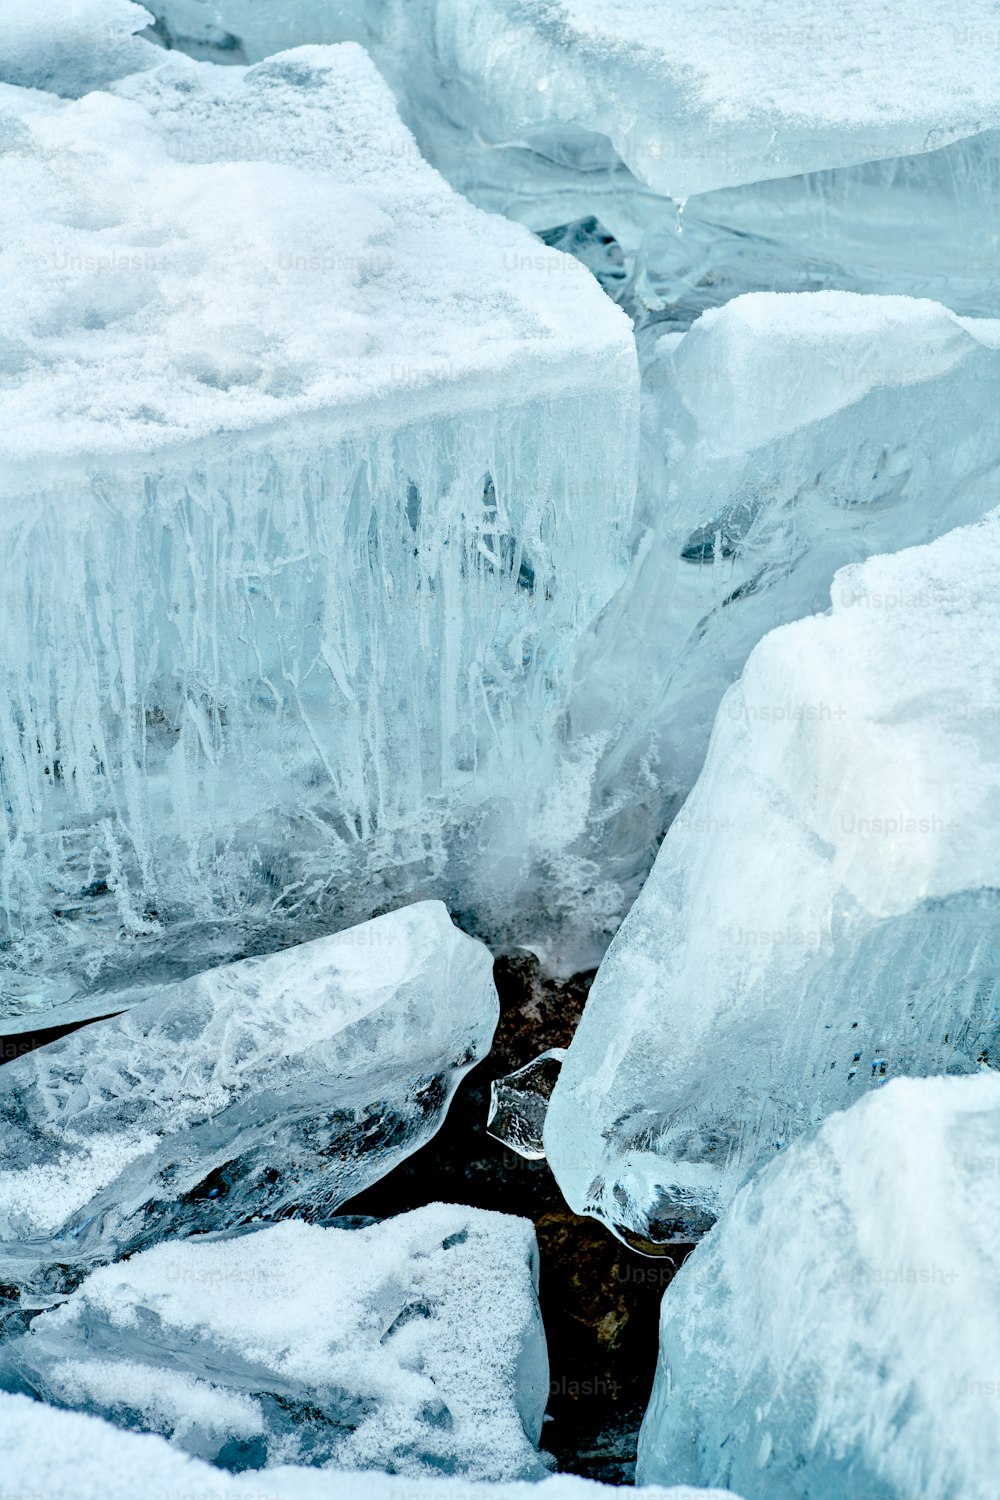 Un orso polare seduto su blocchi di ghiaccio nell'acqua